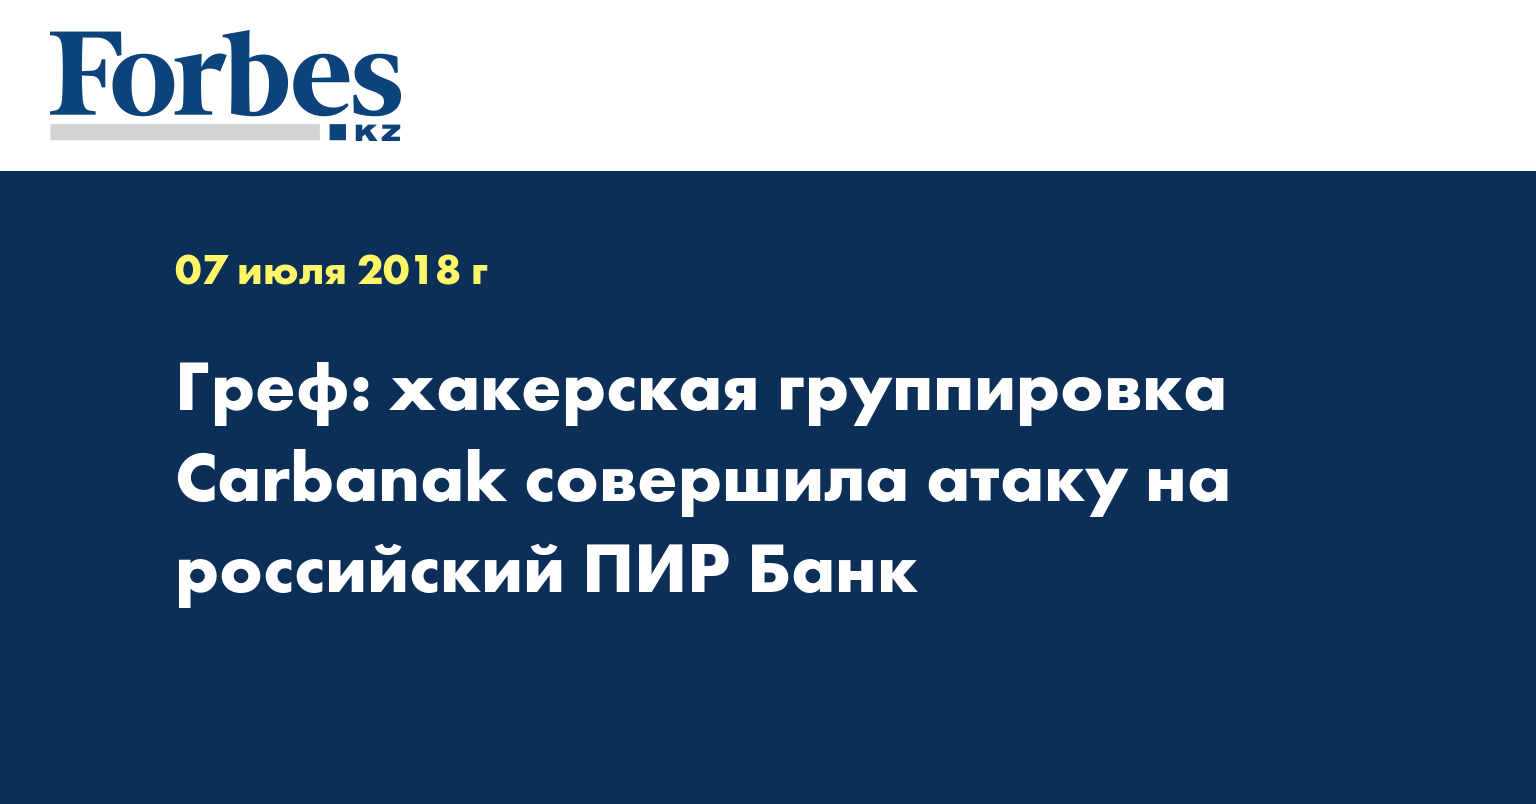 Греф: хакерская группировка Carbanak совершила атаку на российский ПИР Банк  